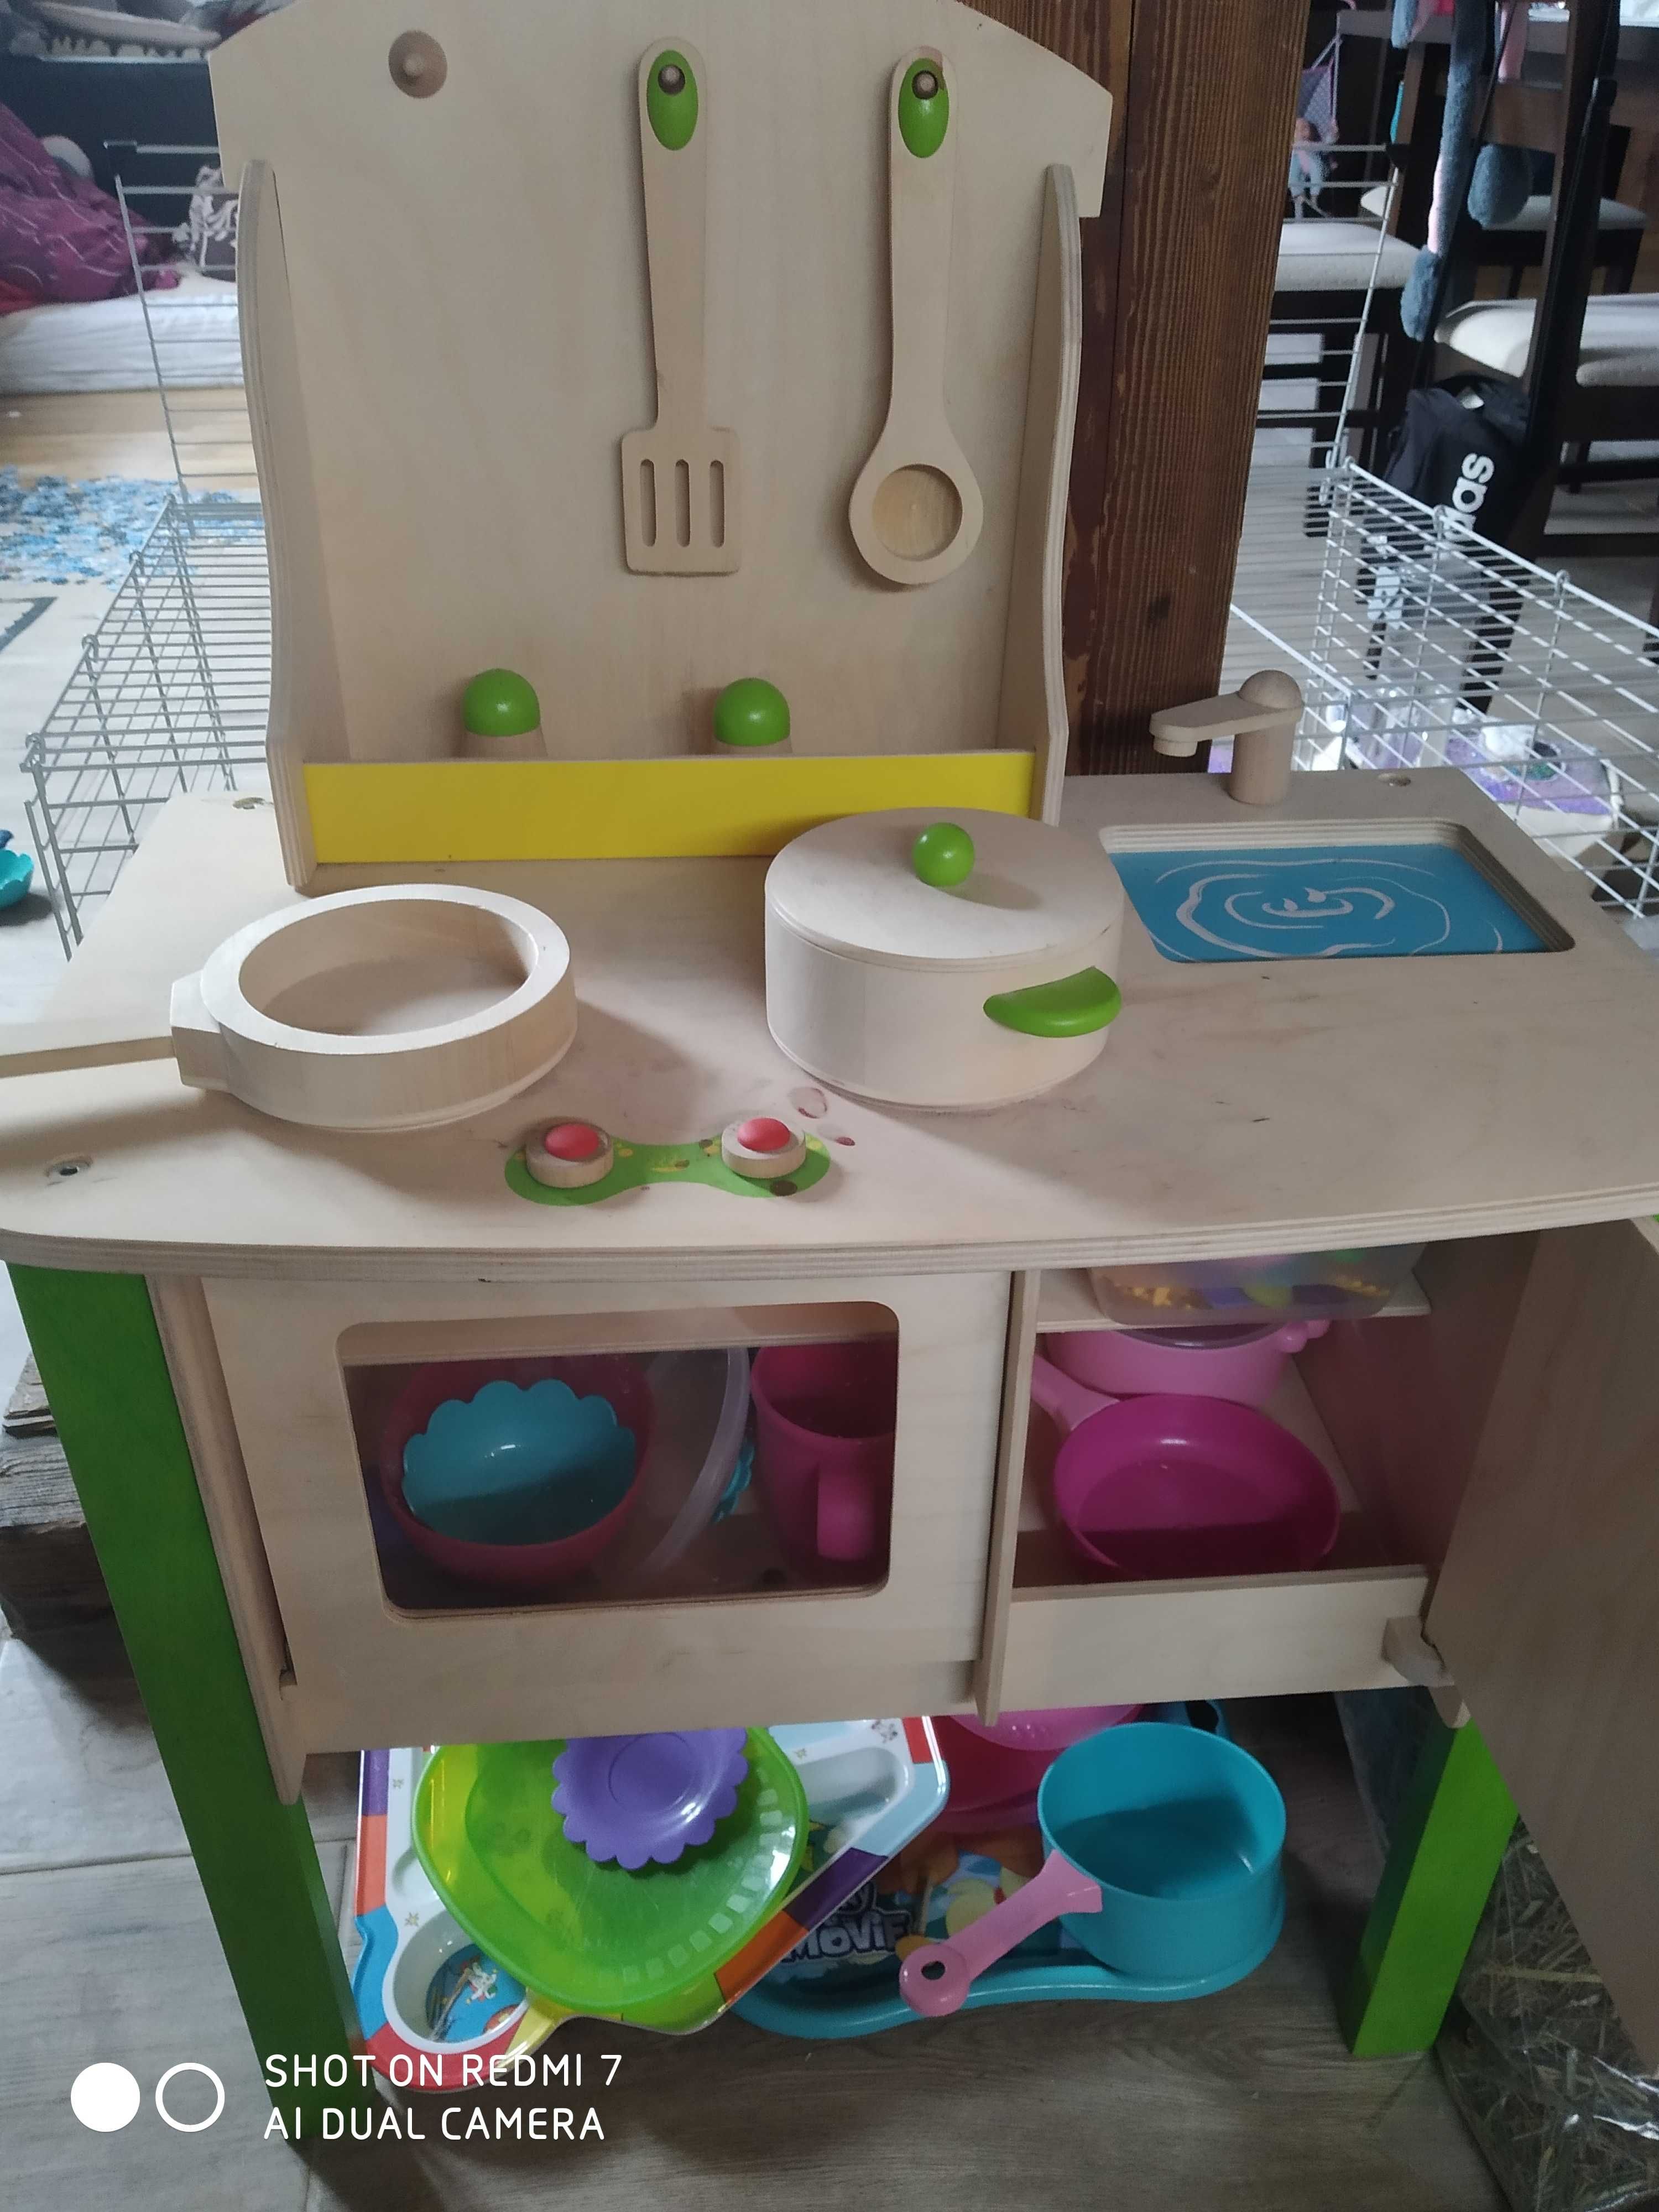 Kuchnia dla dzieci